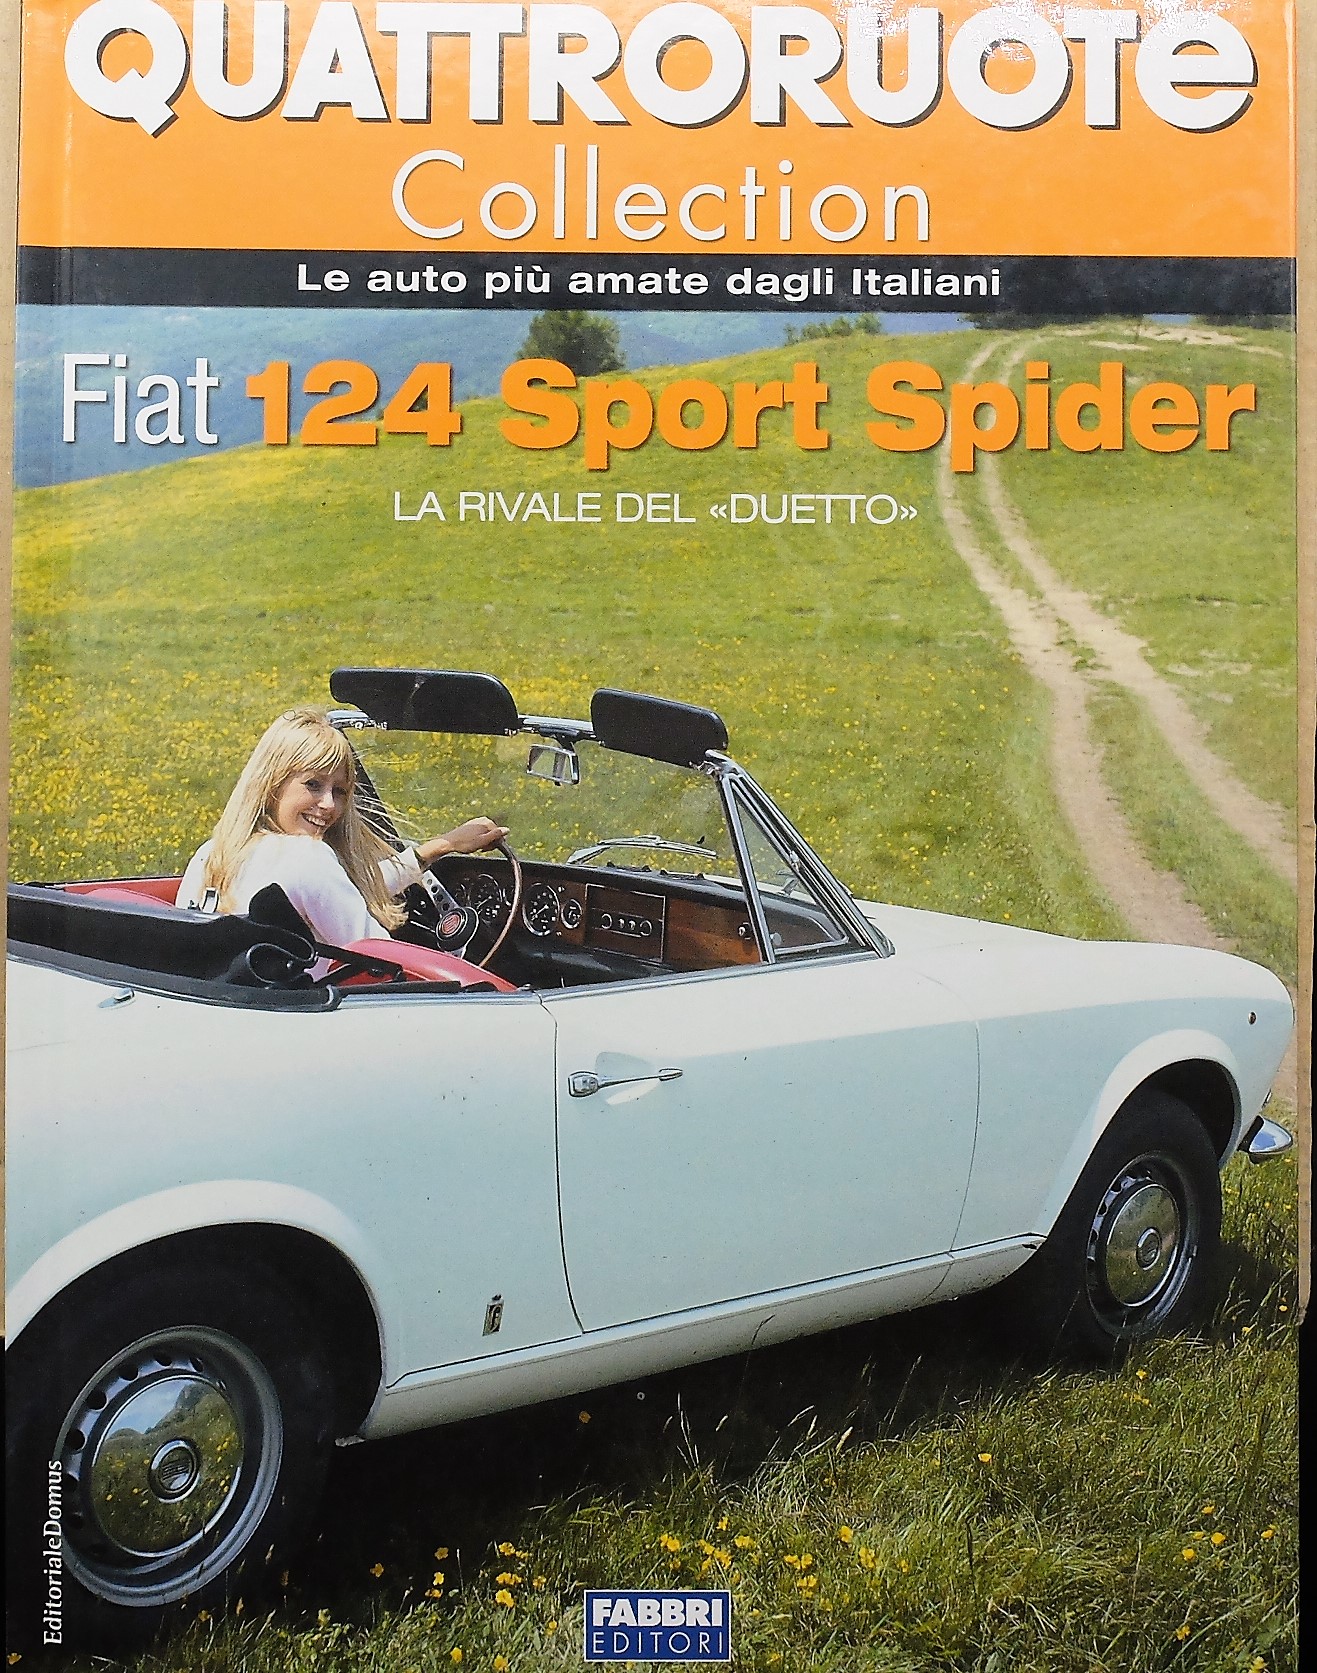 Quattroruote Collection FIAT 124 SPORT SPIDER livret de voiture 1:24 livre livre voiture